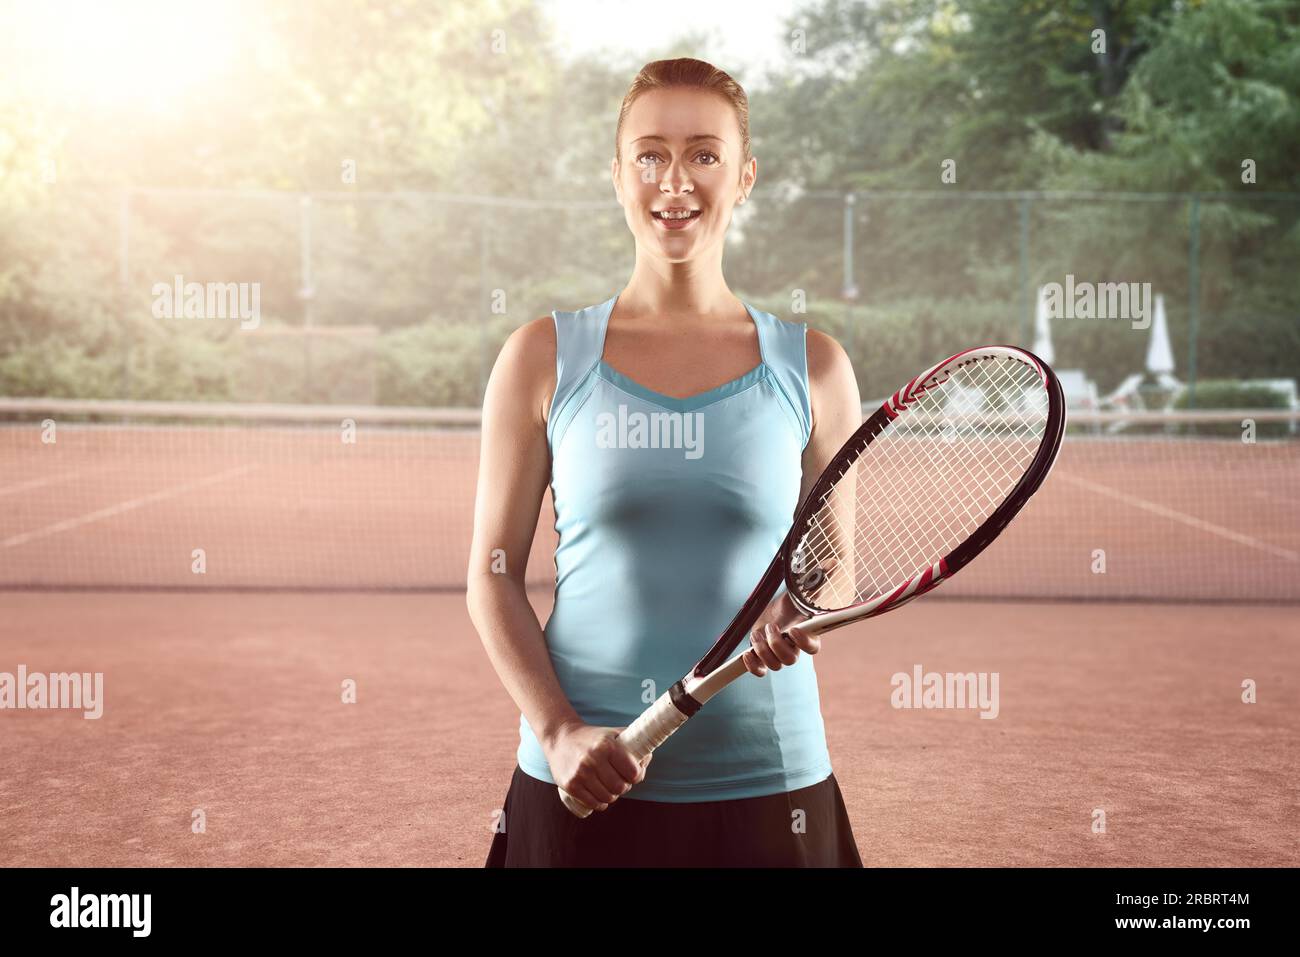 Trois quarts Portrait of smiling Athletic Blonde Woman Holding tennis racket en position d'attente sur un court de tennis Banque D'Images